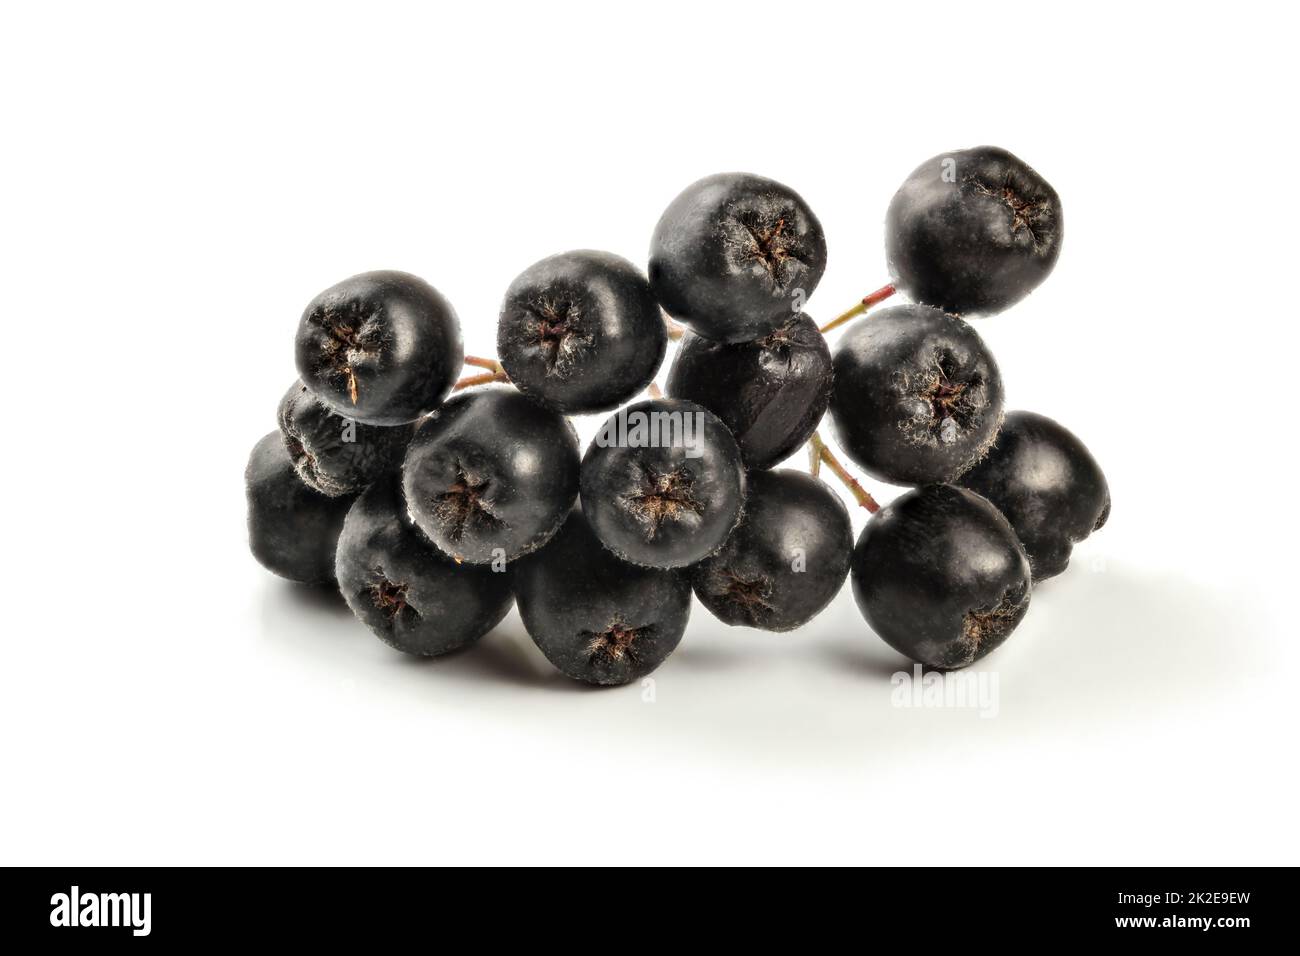 Dettagli su aronia (Chokeberry) Frutti con stelo, isolati su sfondo bianco Foto Stock